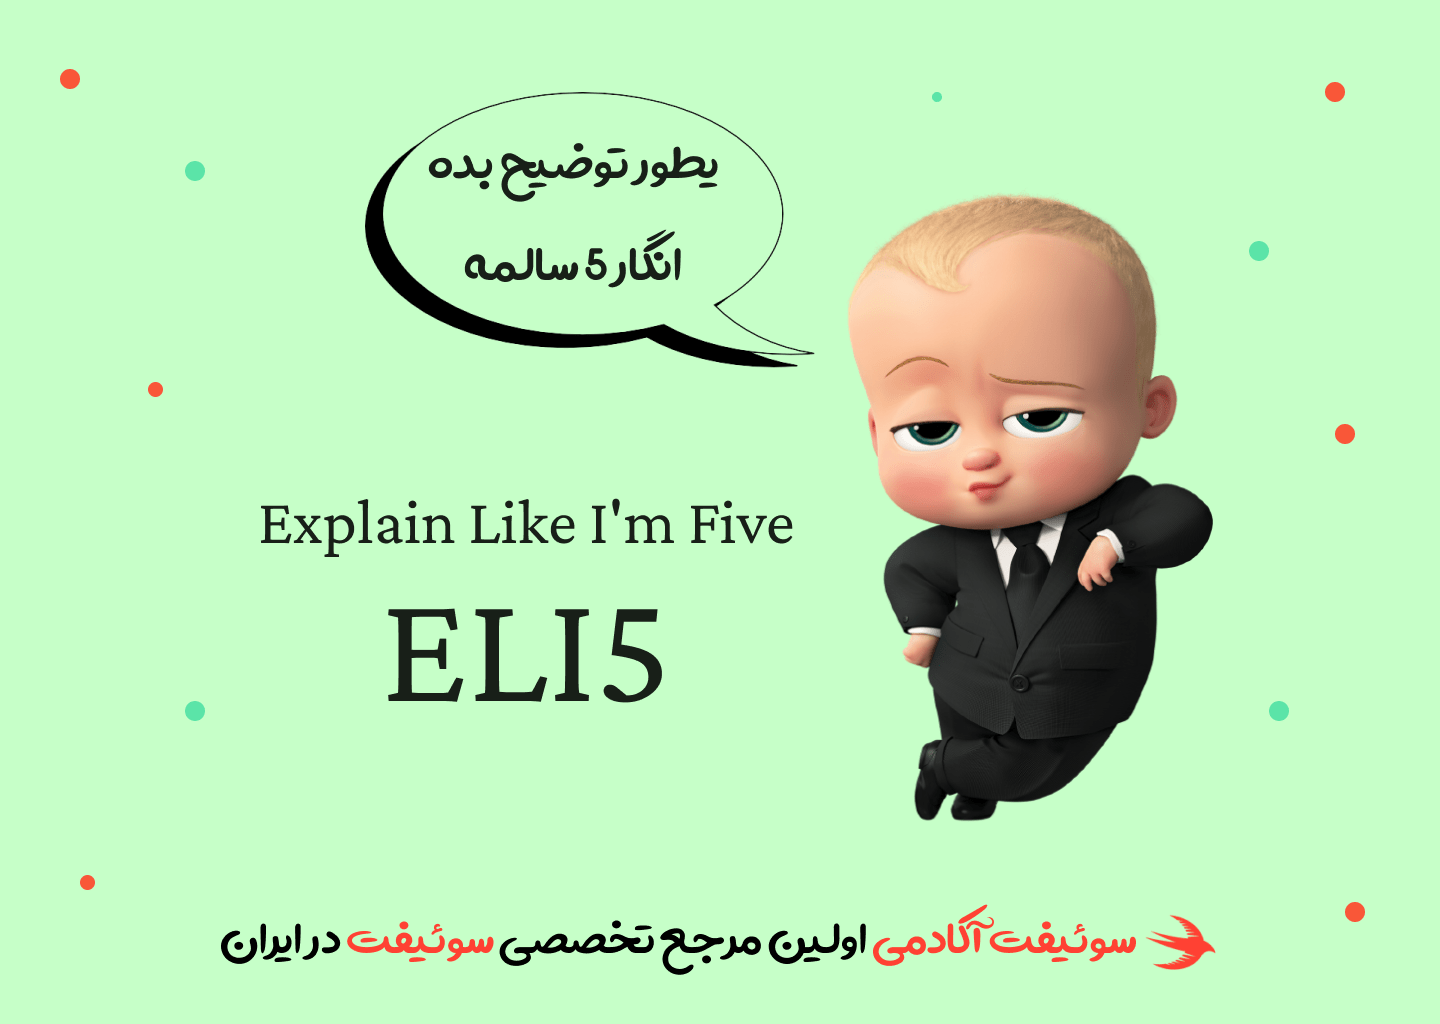 eli5 به شما کمک میکند محتواهایی با زبان ساده را پیدا کنید